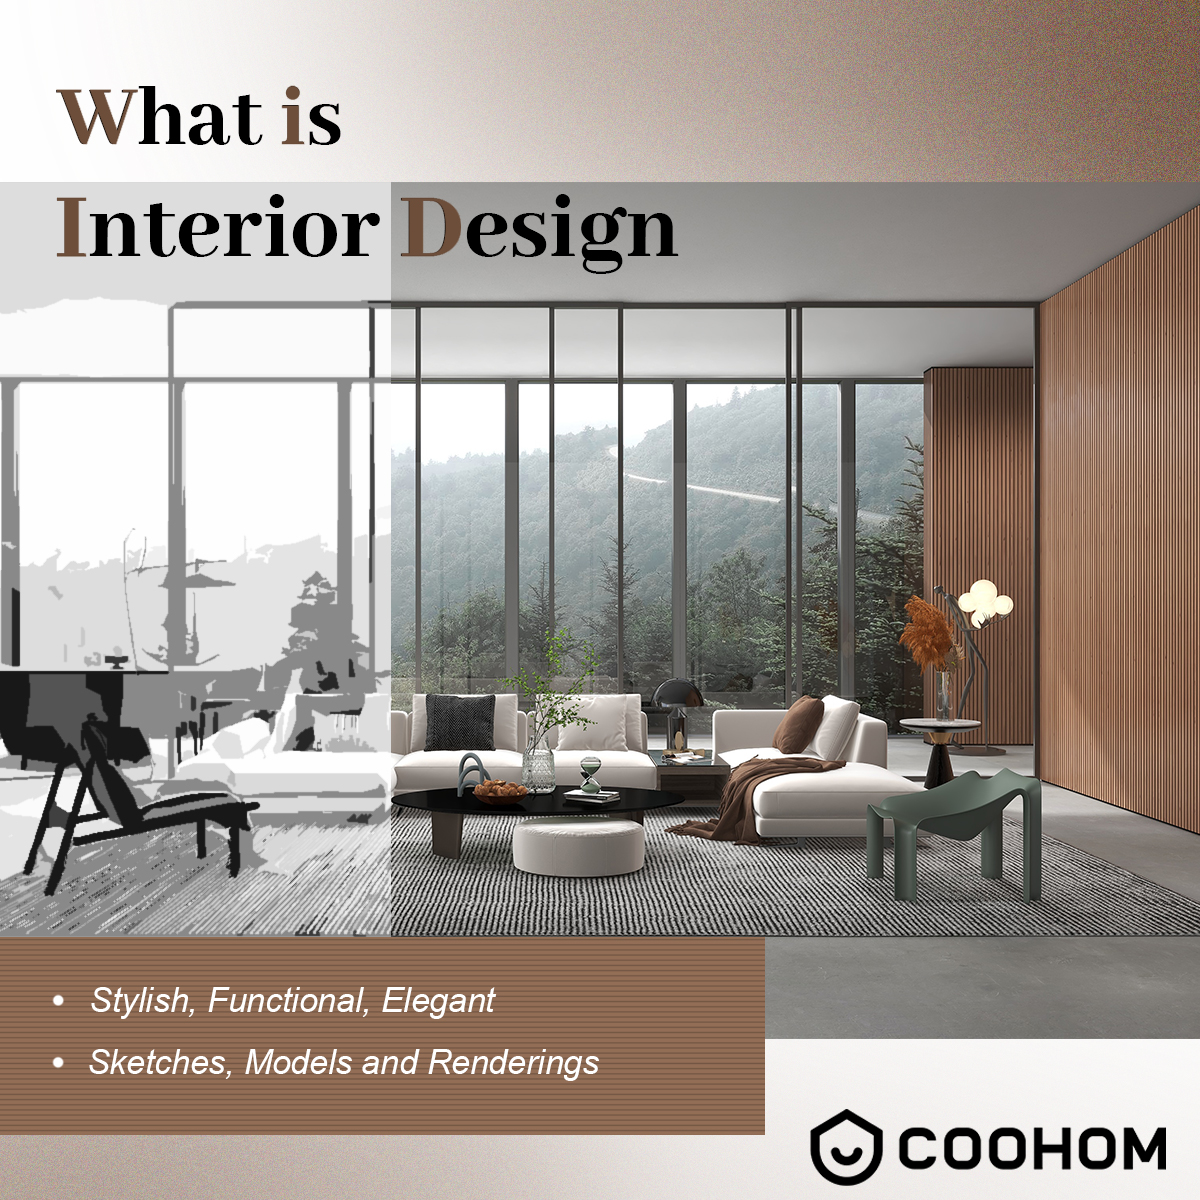 What Is Interior Design?